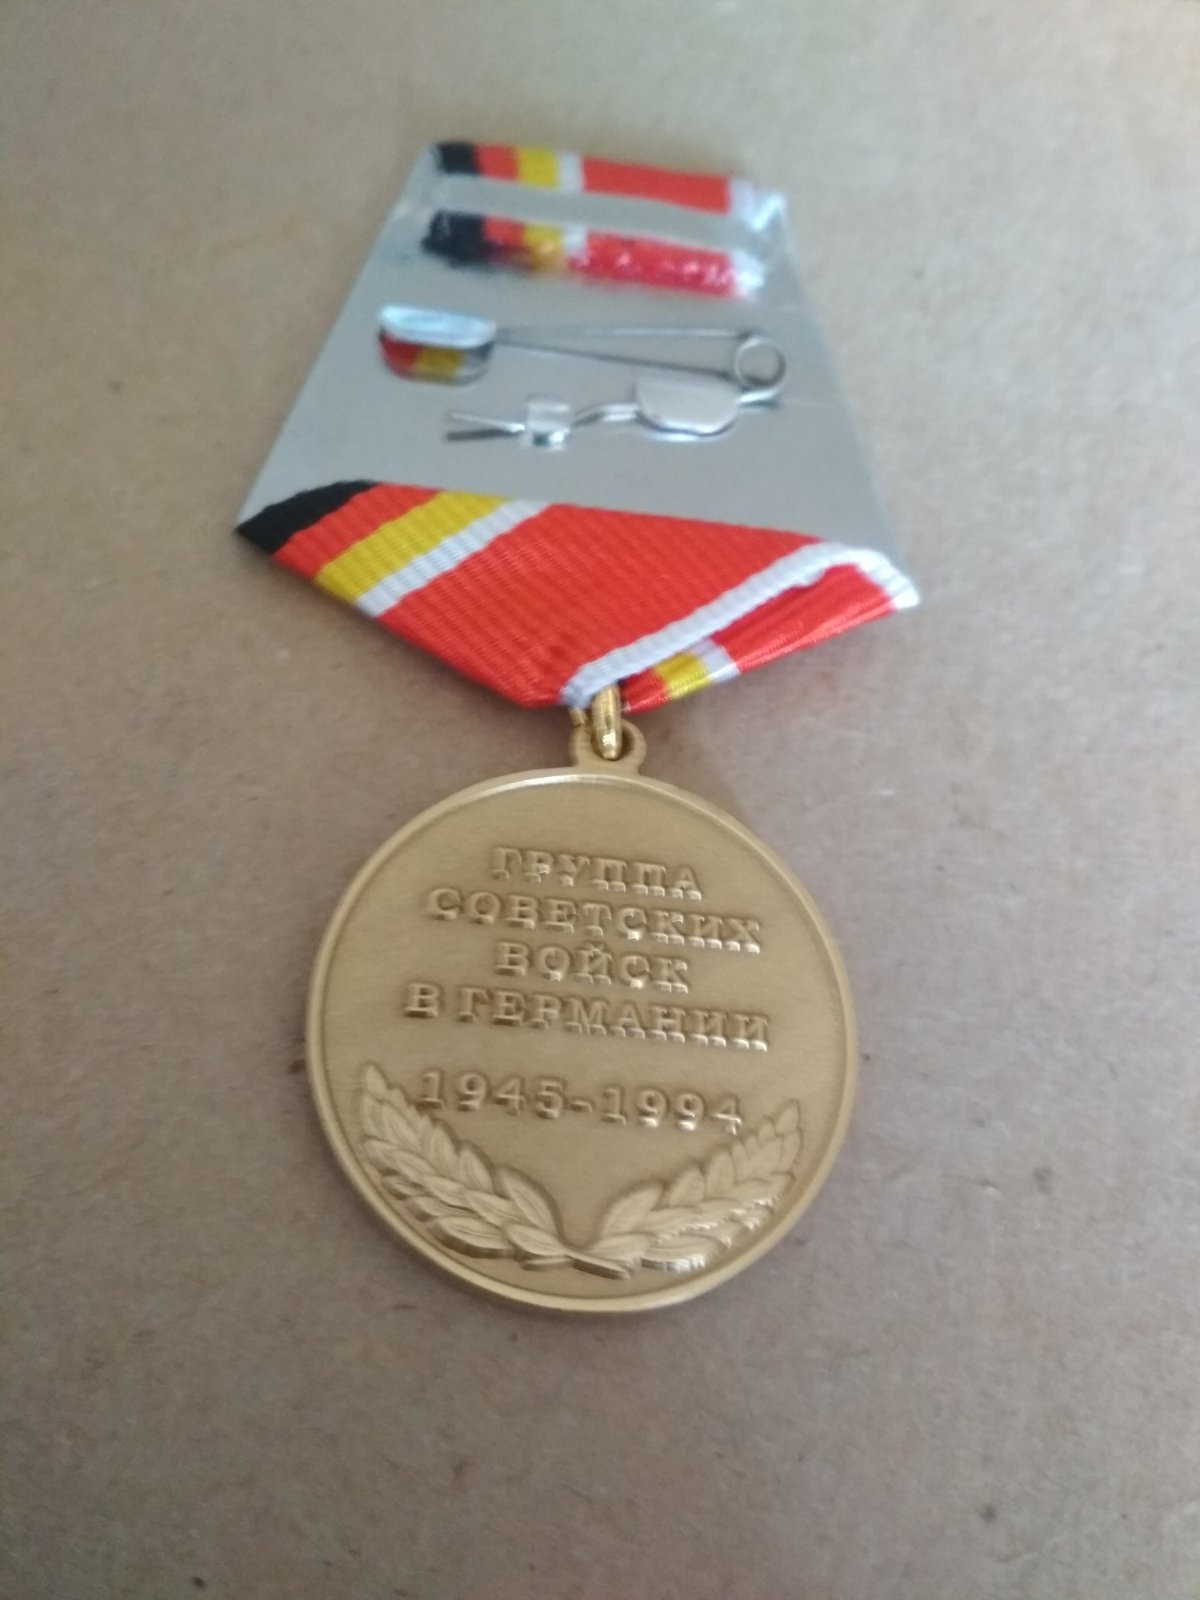 Памятная медаль "Группа советских войск в Германии 1945-1994"